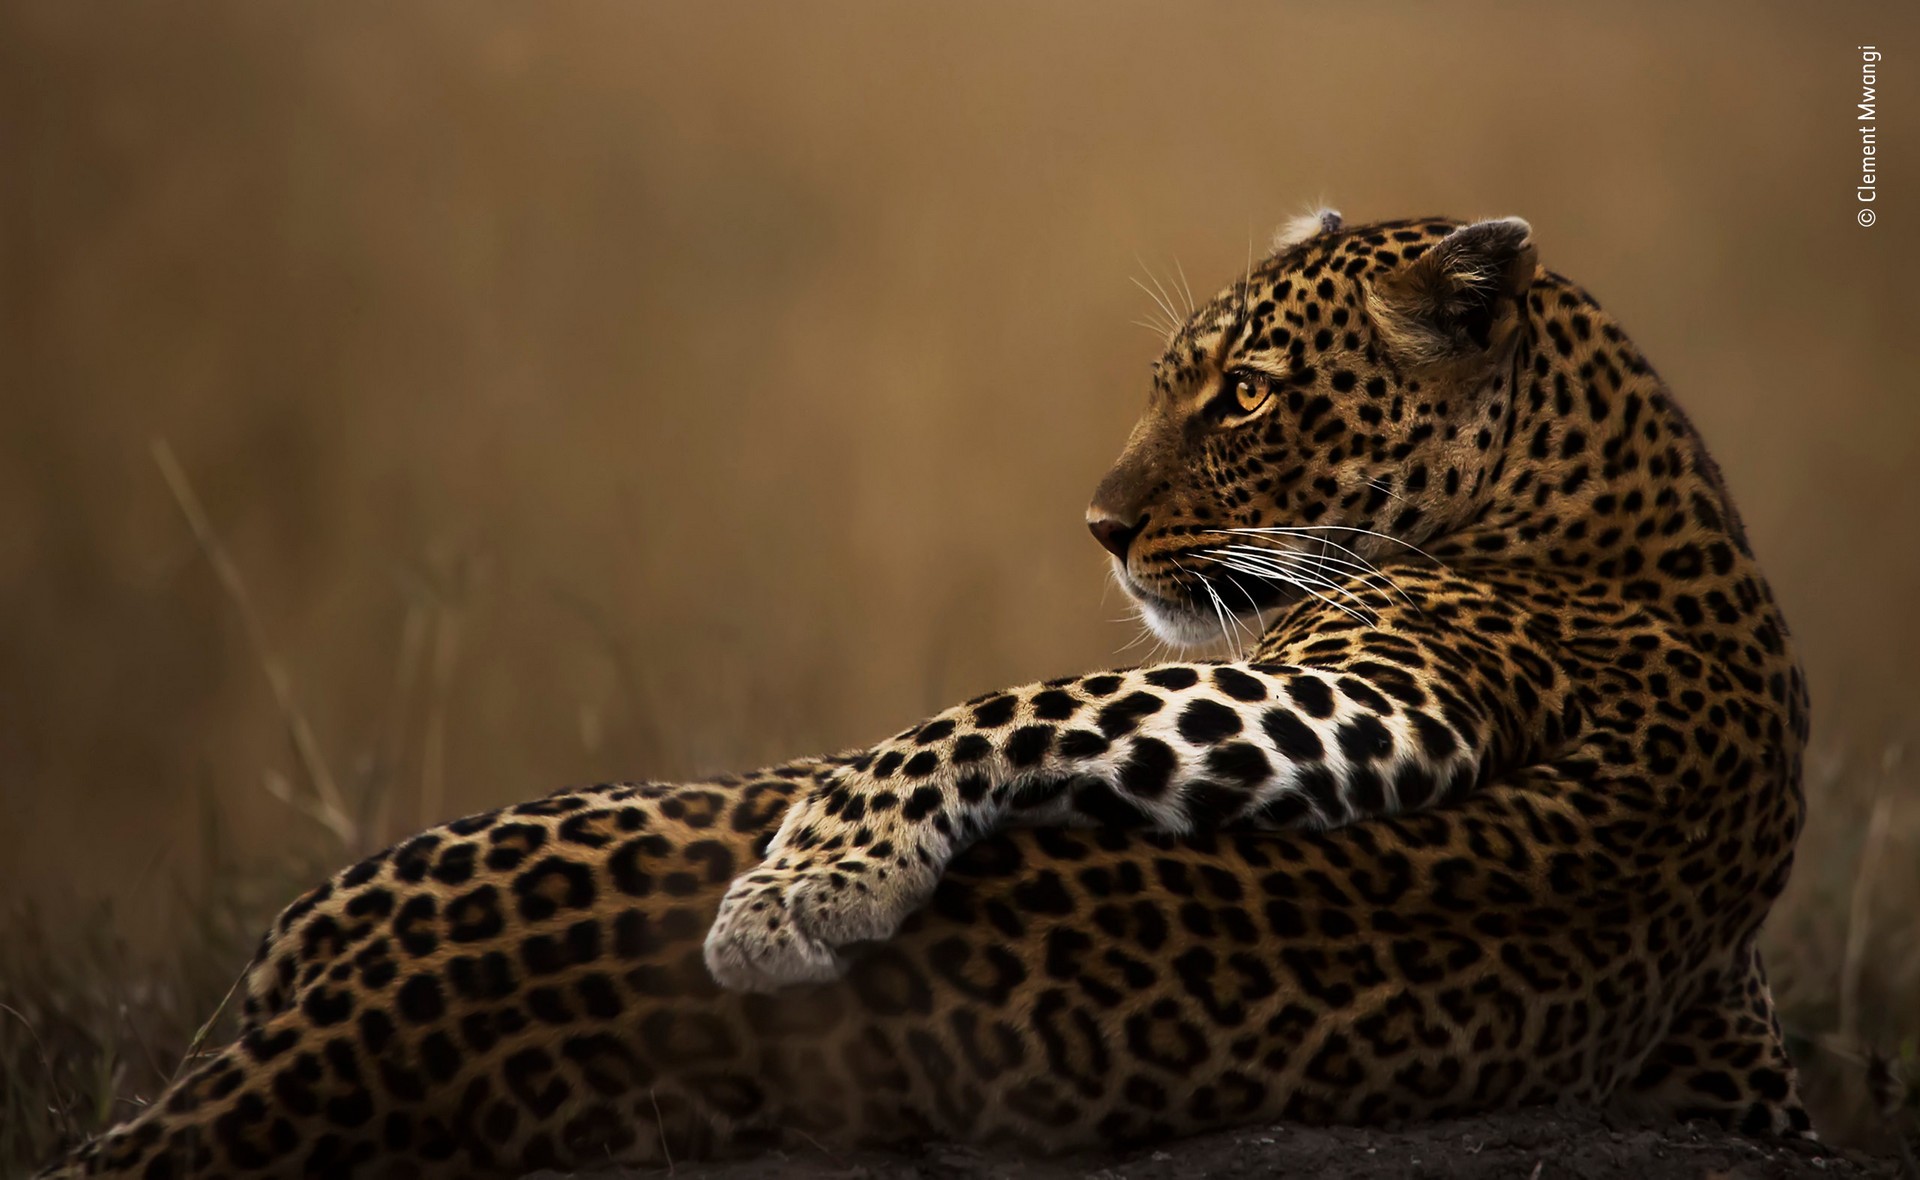 Финалист 2019. Позёр. Леопард в национальном заповеднике Масаи-Мара в Кении. Автор Клемент Мванги